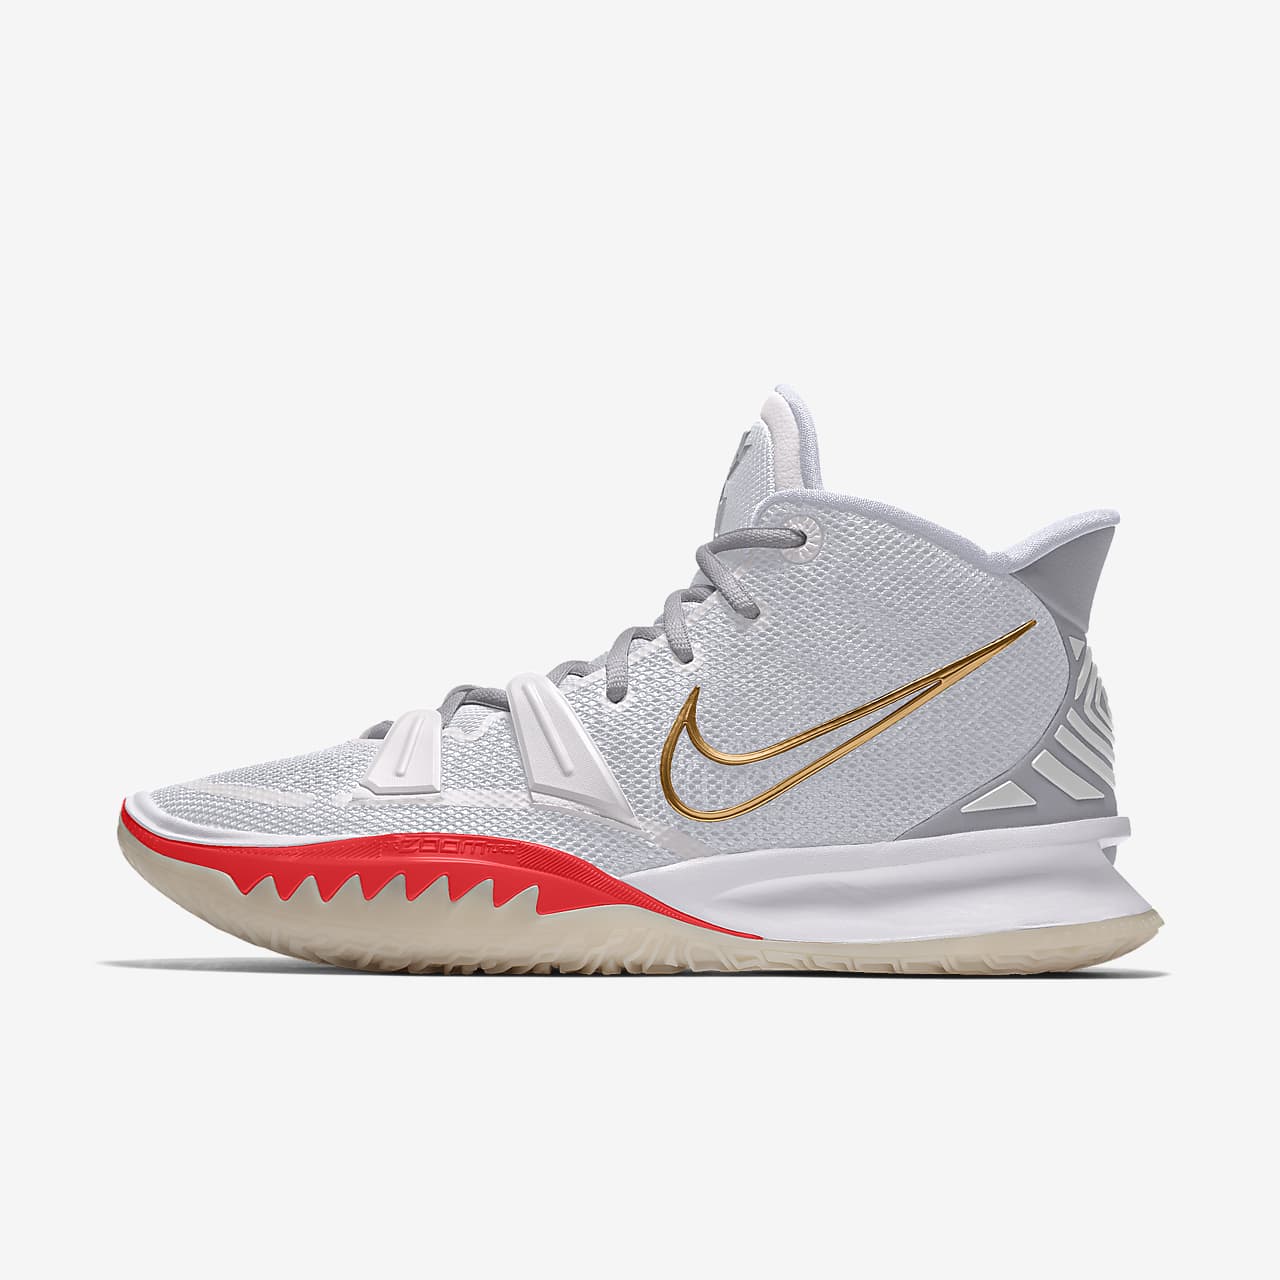 Kyrie 7 By You Custom Basketball Shoe 